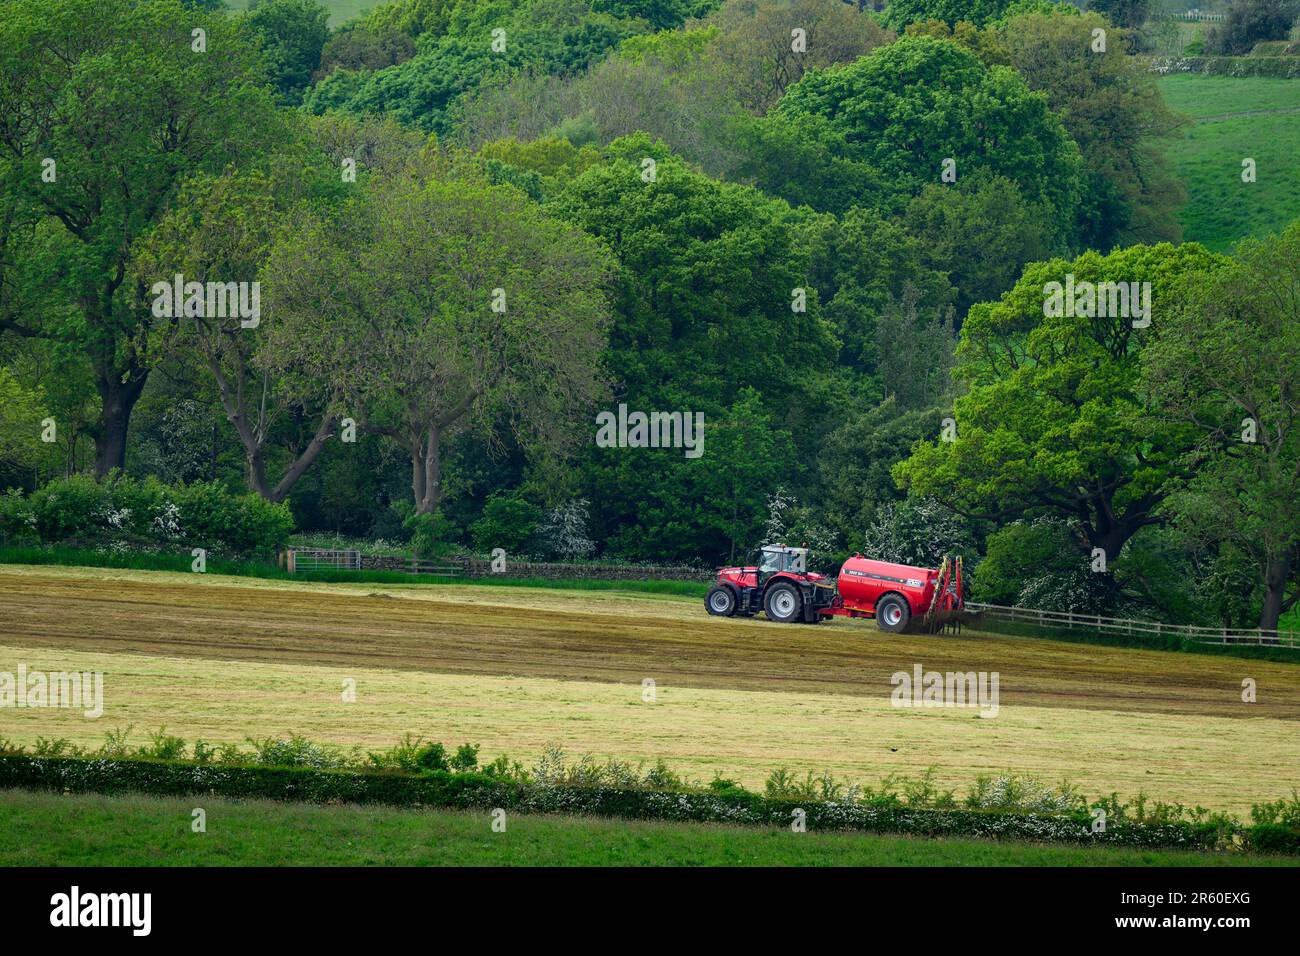 Landwirt arbeiten Fahren Traktor & zylindrischen Düngebehälter Sprühen Entleerungs Gülle auf Land Ackerland Weide Gras - Yorkshire, England Großbritannien Stockfoto